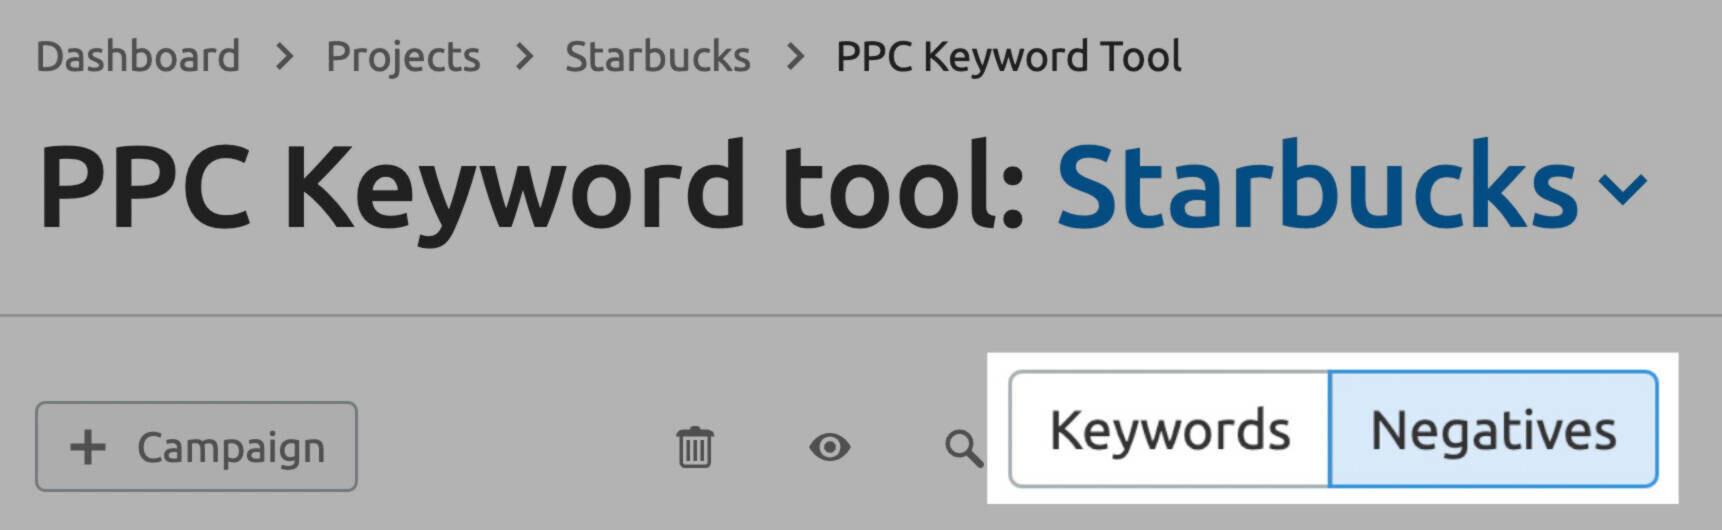 PPC Keyword Tool negatives